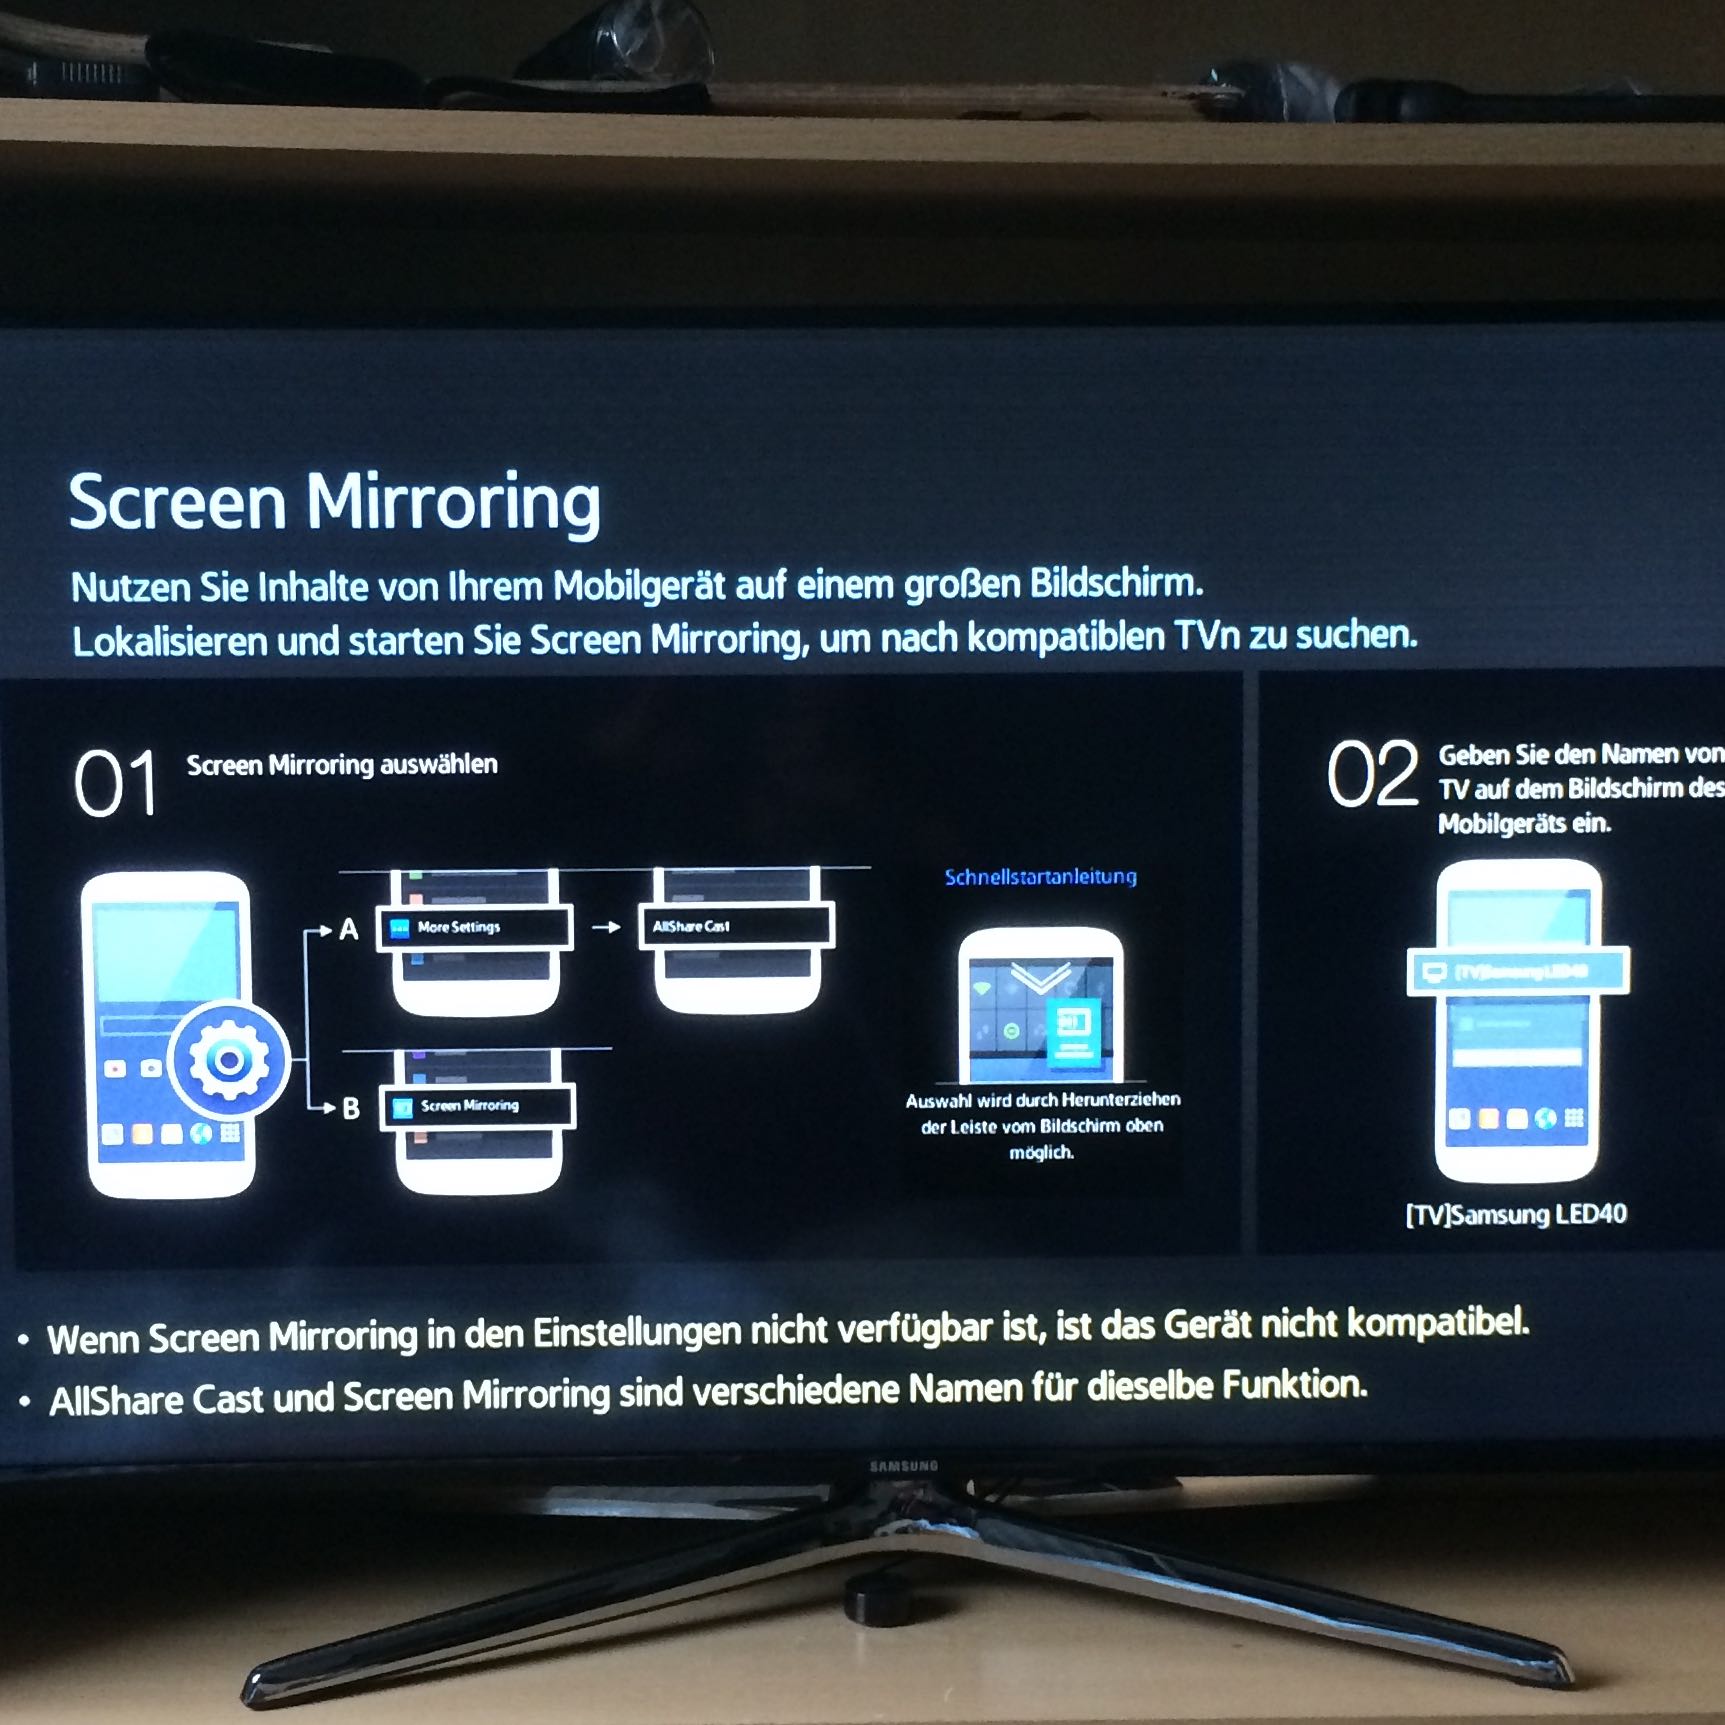 Screen Mirroring dengan iPhone (Apple, Samsung, TV)